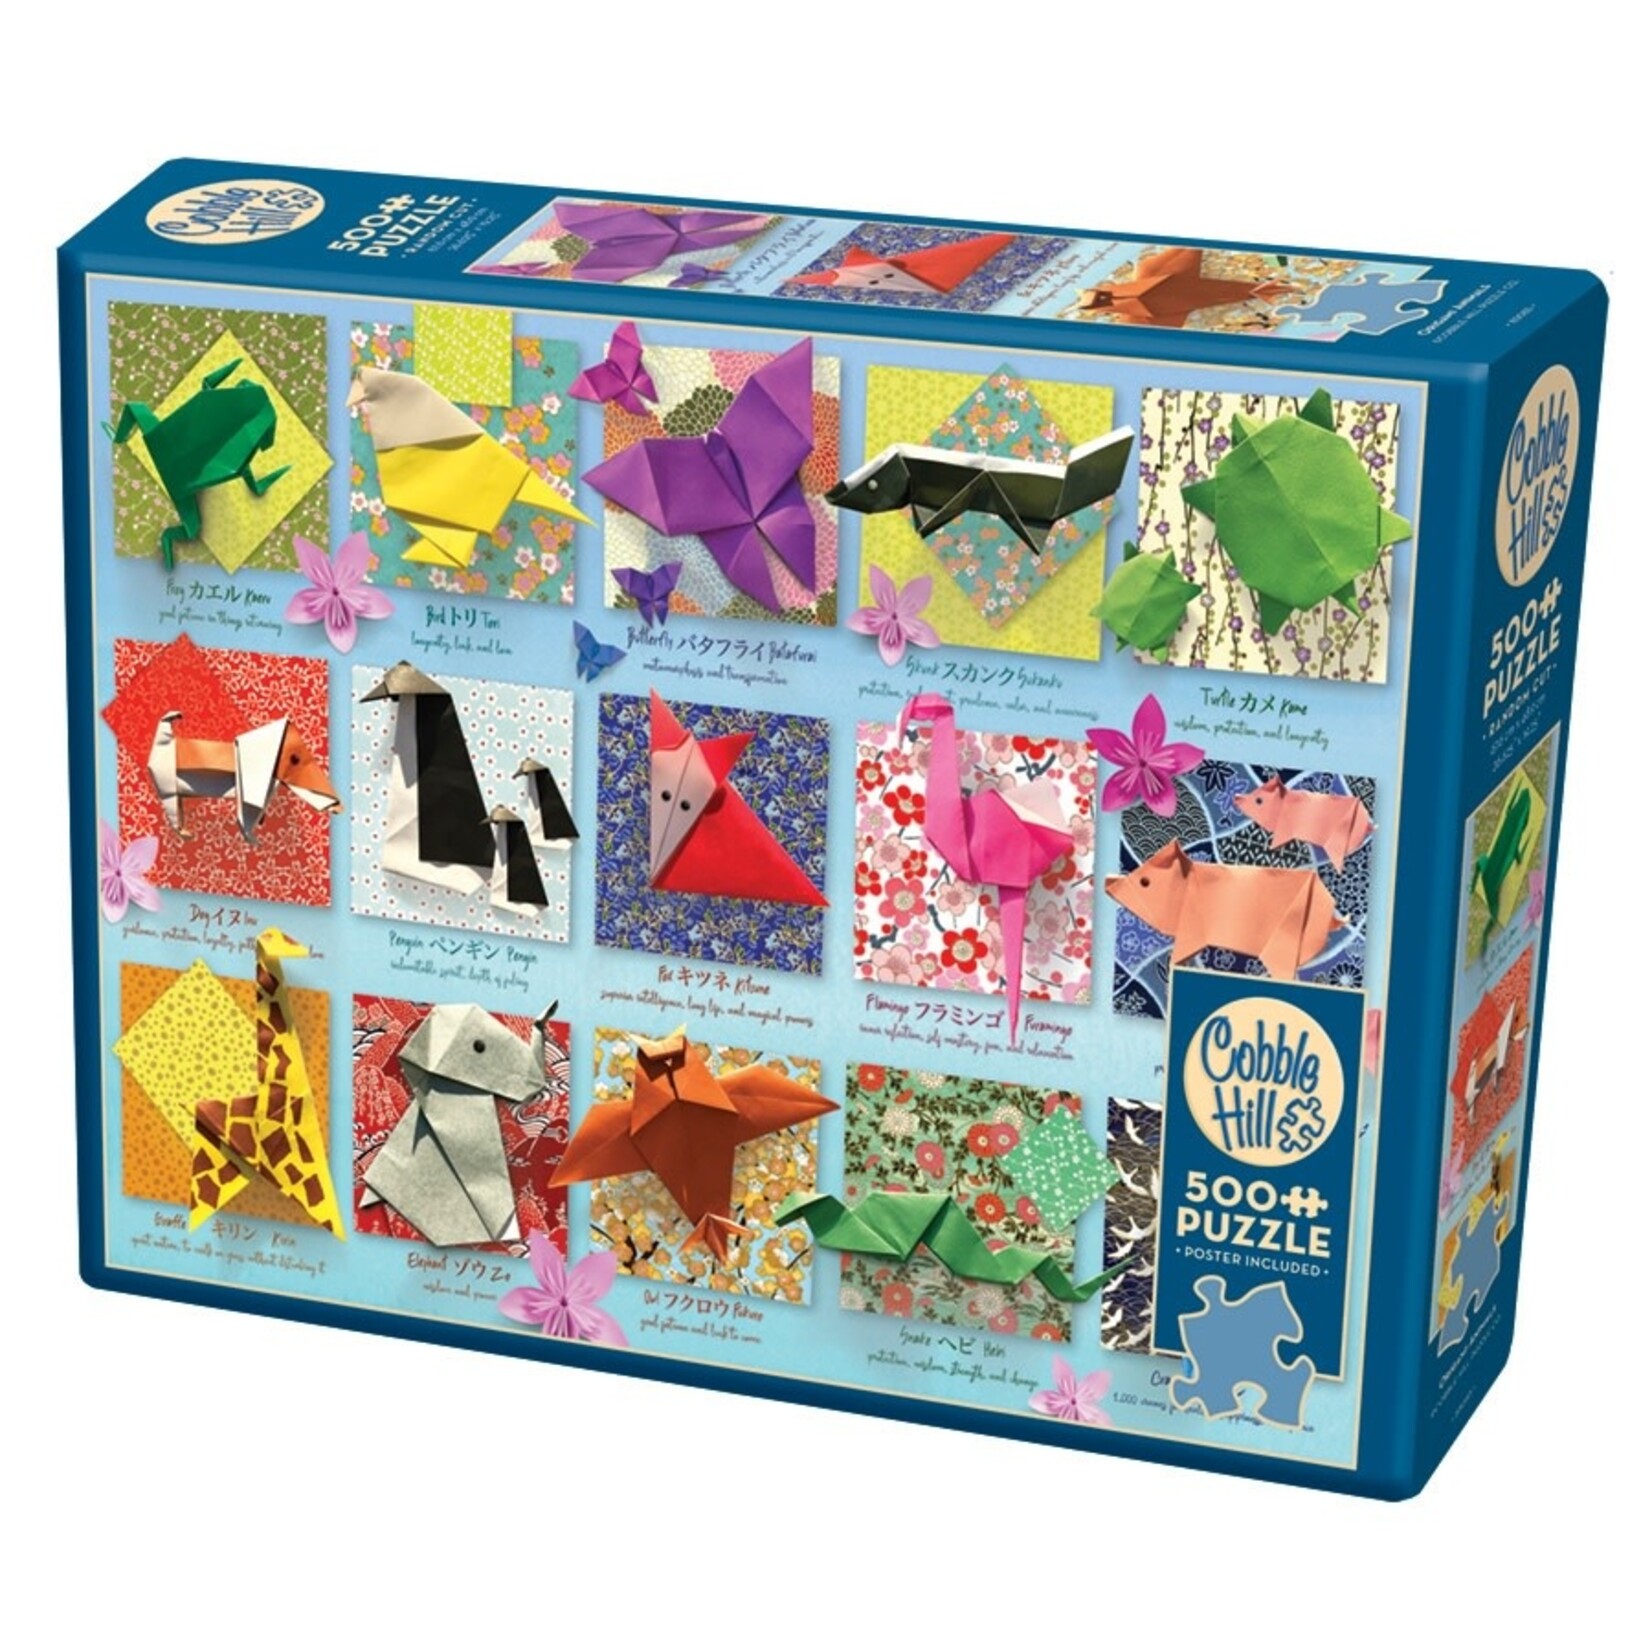 Cobble Hill Cobble Hill: Origami Animals Puzzle (500ct)